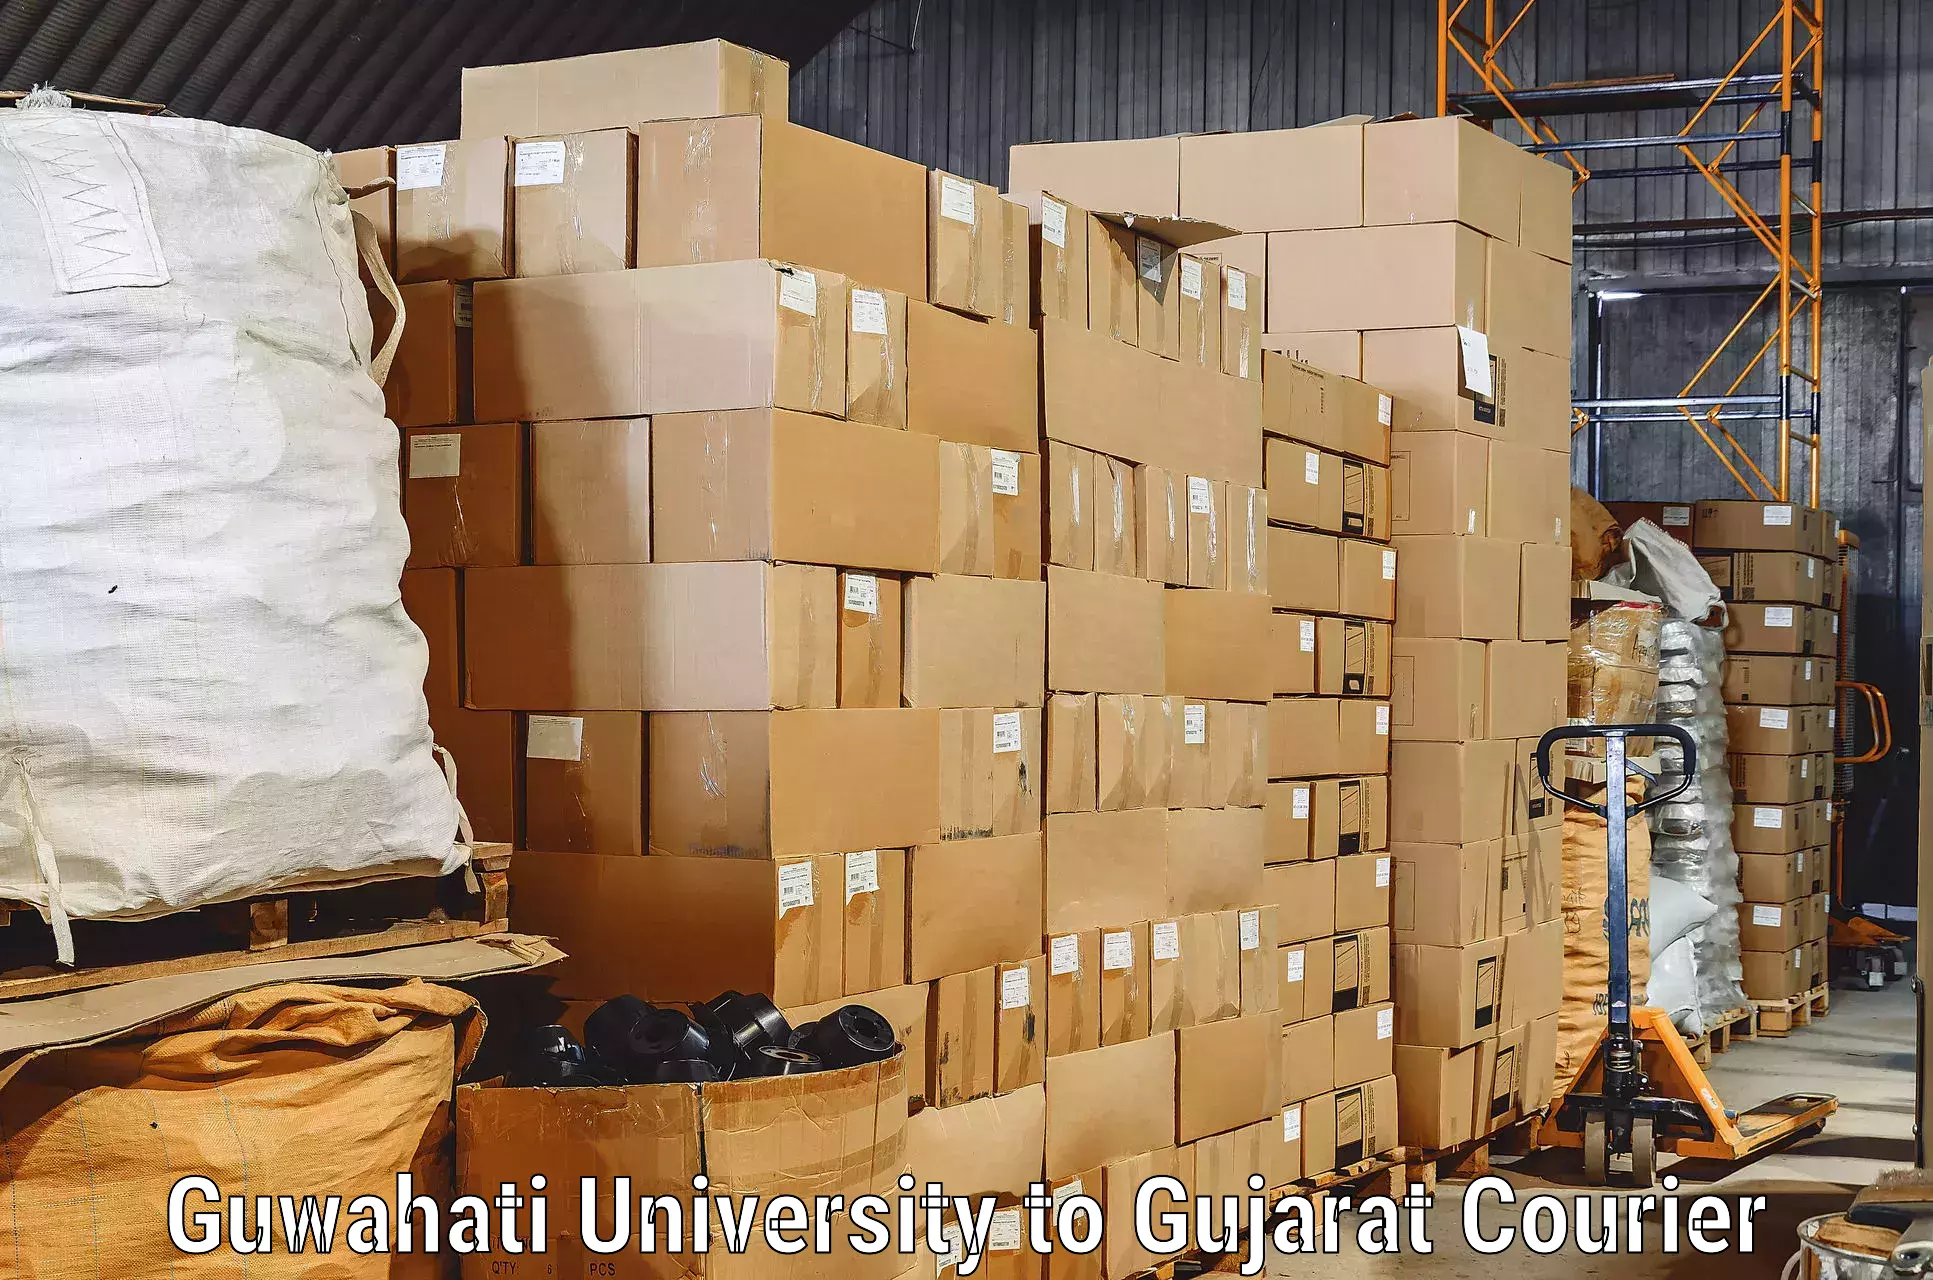 Furniture transport service Guwahati University to Vadodara